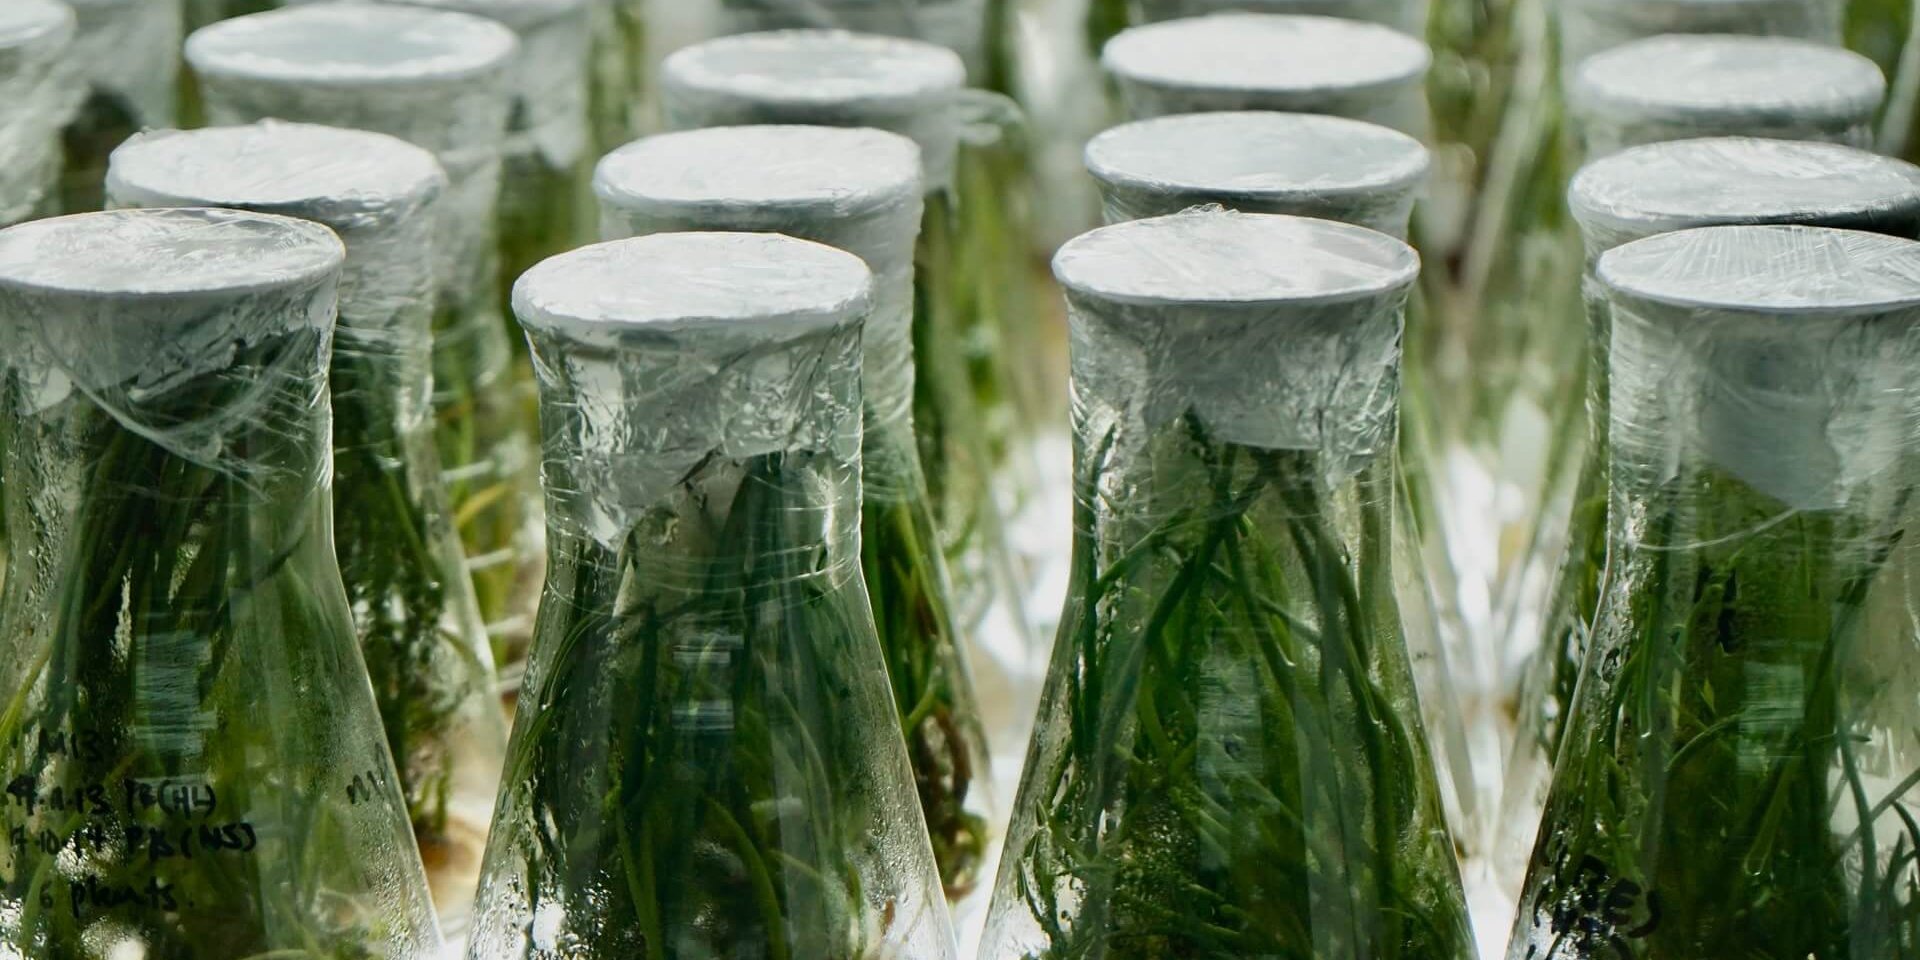 Green plants in glas beaks